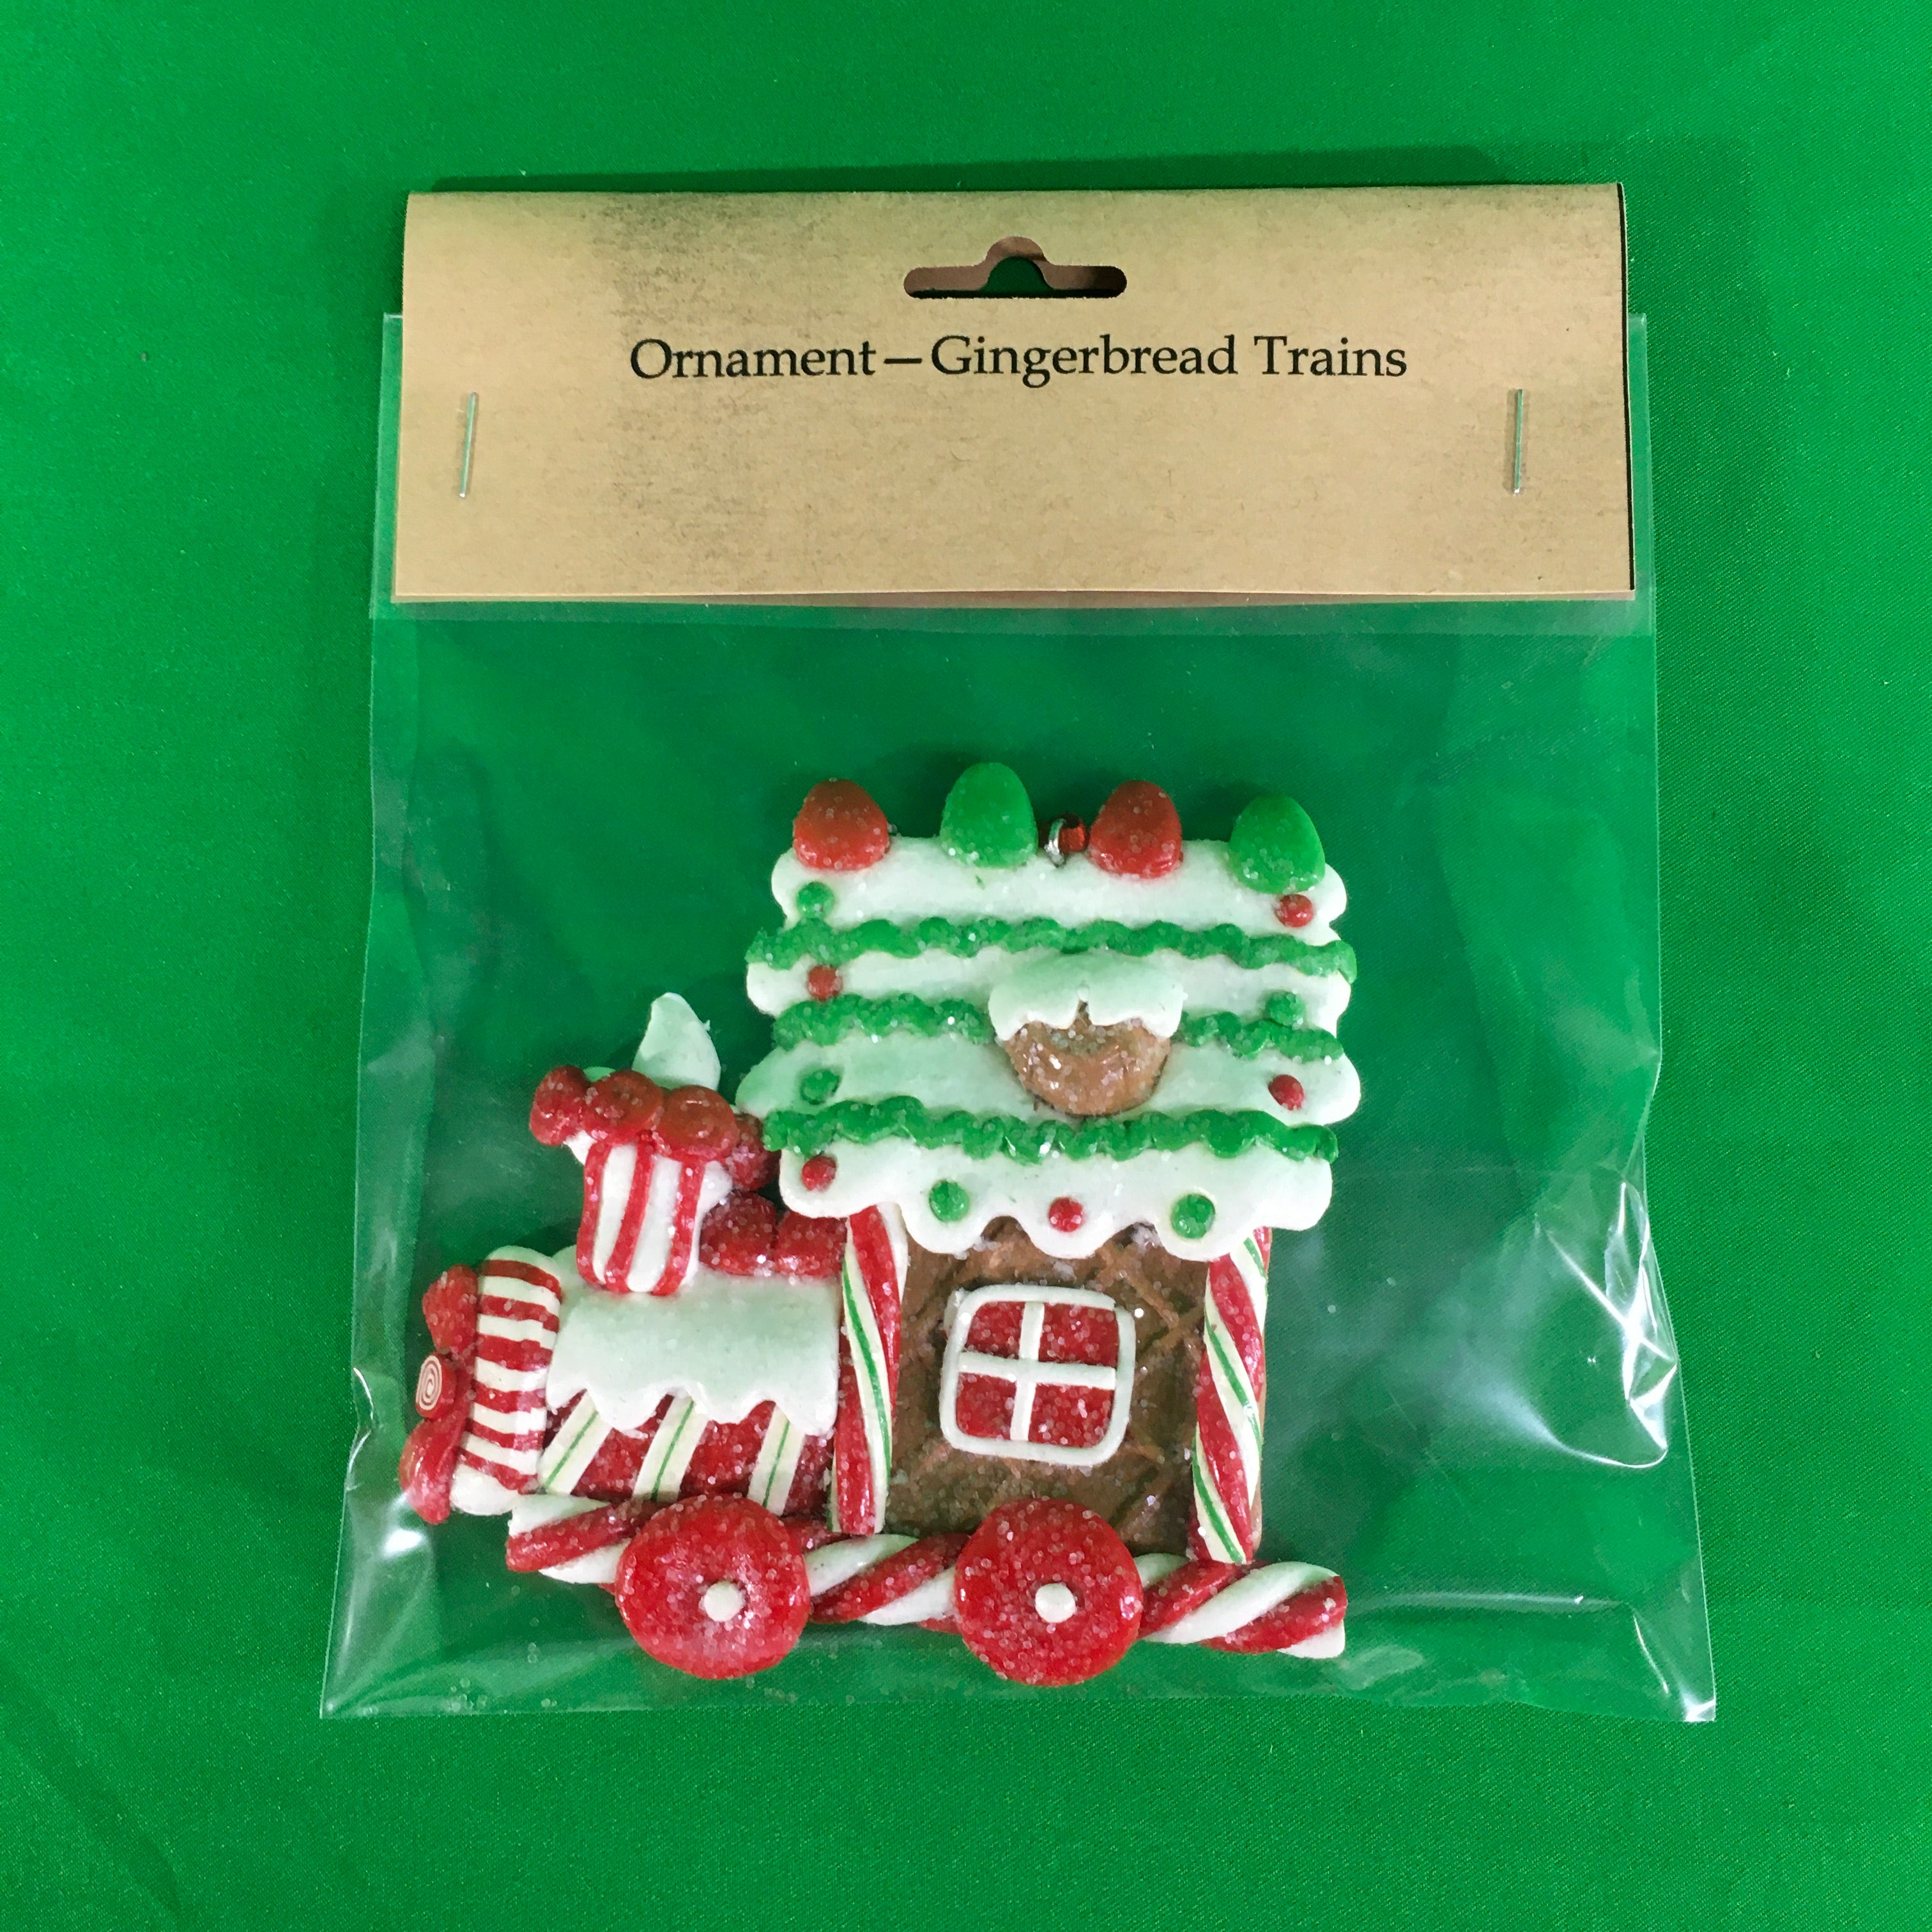 Ornament - Gingerbread Trains